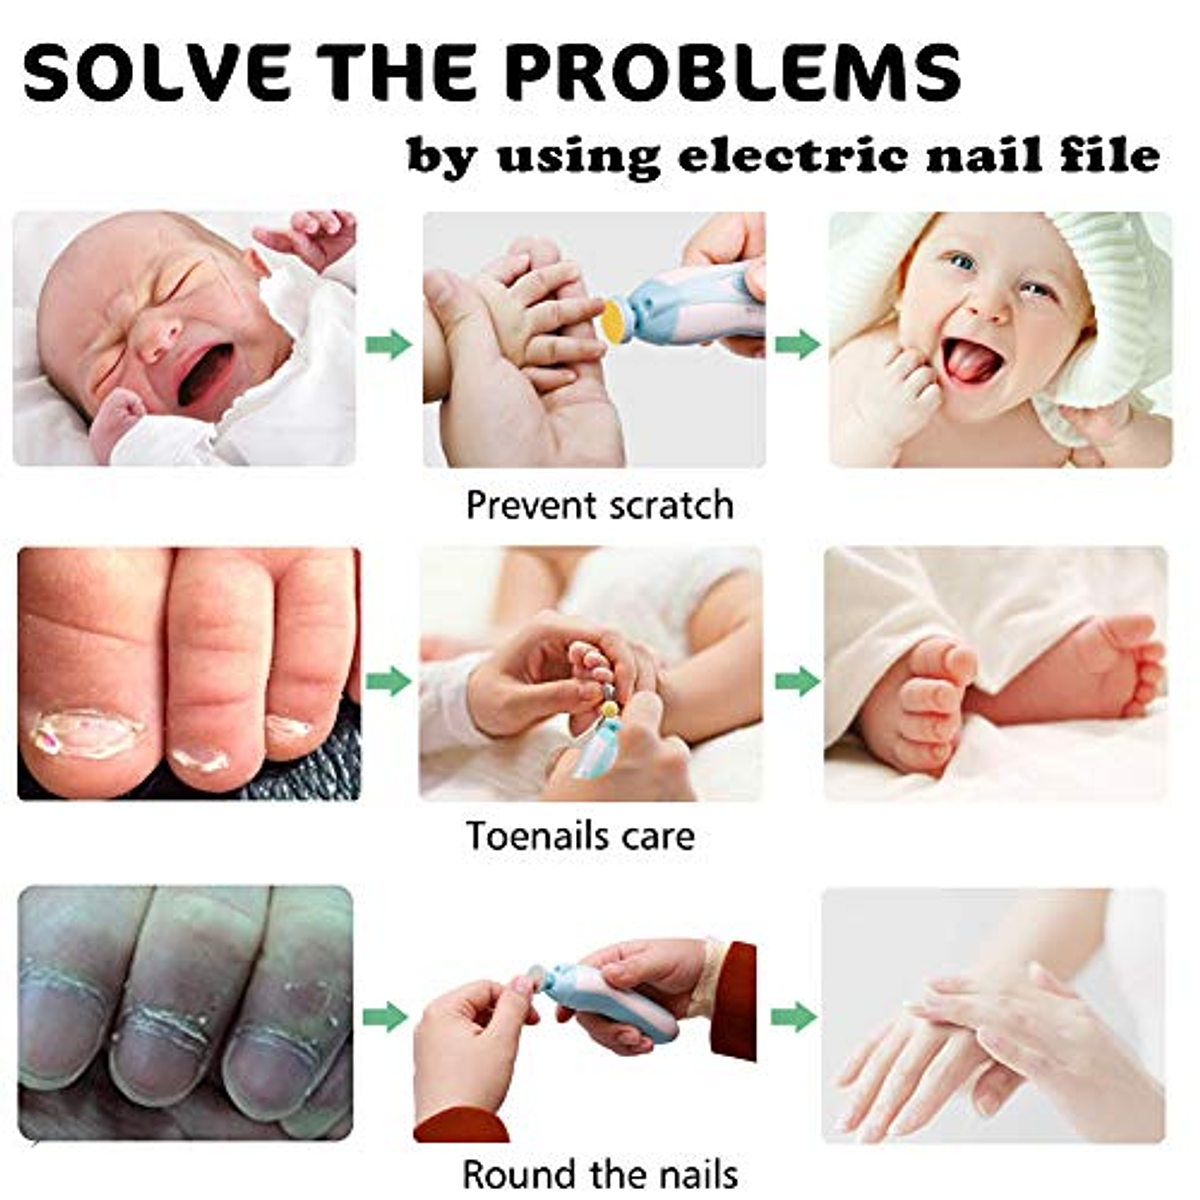 Kit eléctrico para cortar, limar y pulir las uñas de tu bebé - Uniradio  Informa